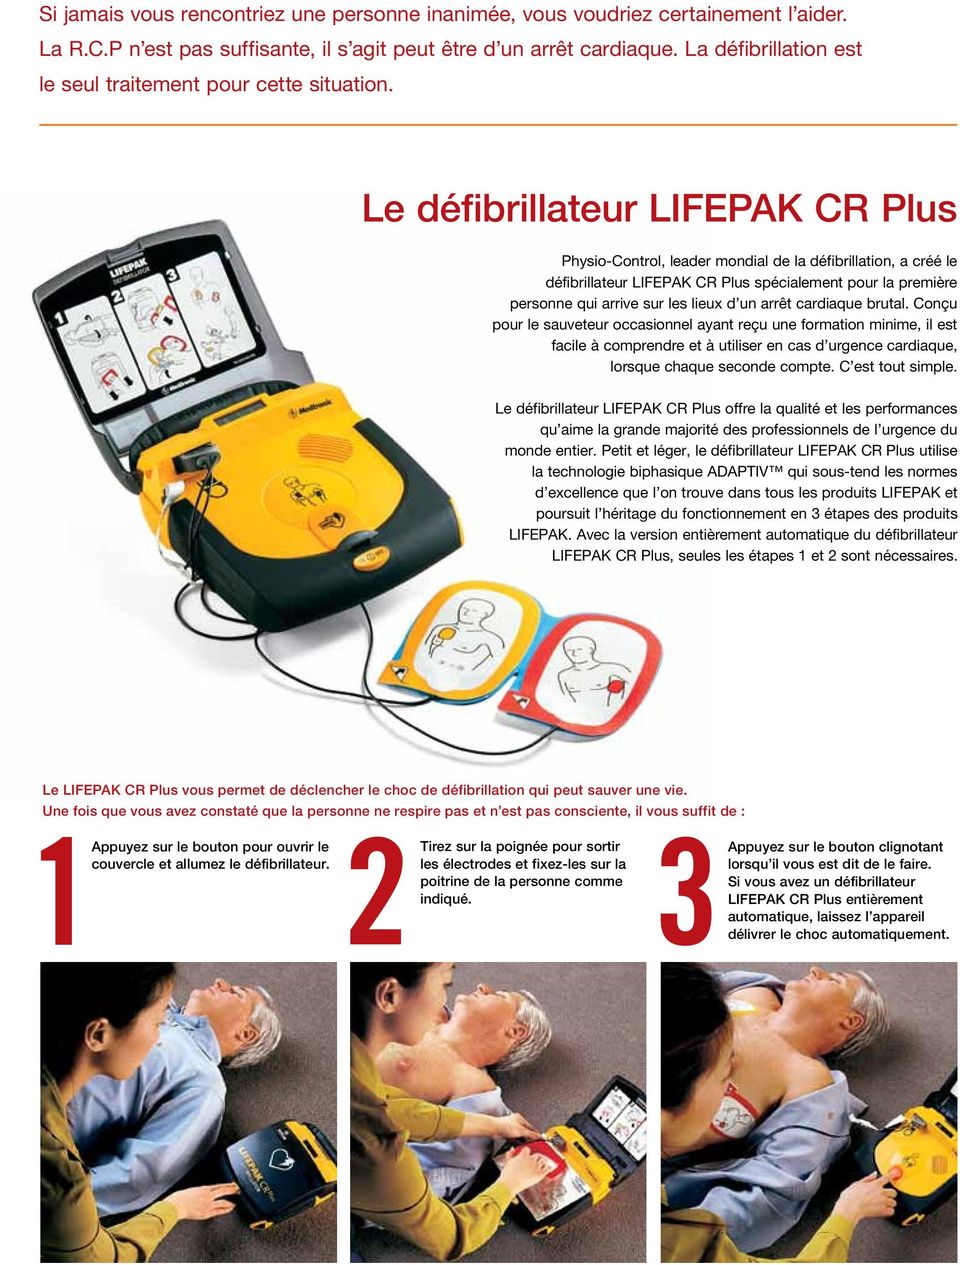 Le défibrillateur LIFEPAK CR Plus Physio-Control, leader mondial de la défibrillation, a créé le défibrillateur LIFEPAK CR Plus spécialement pour la première personne qui arrive sur les lieux d un